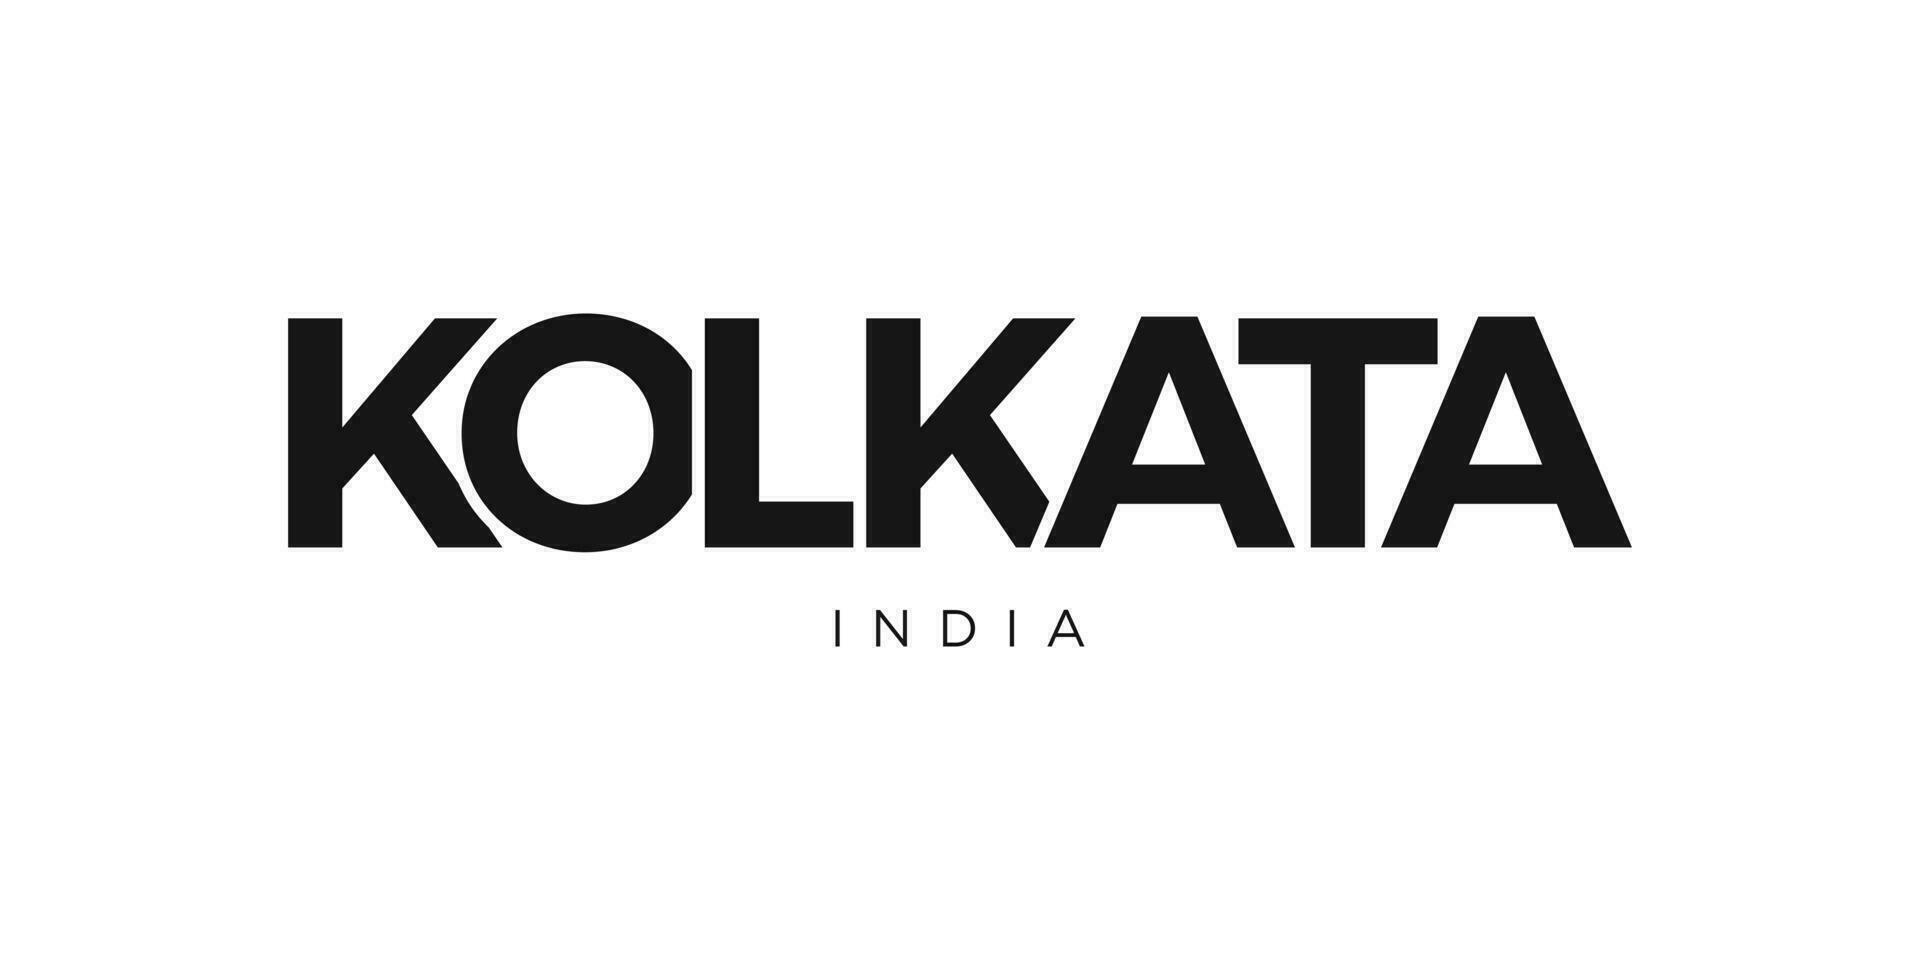 Kolkata im das Indien Emblem. das Design Eigenschaften ein geometrisch Stil, Vektor Illustration mit Fett gedruckt Typografie im ein modern Schriftart. das Grafik Slogan Beschriftung.